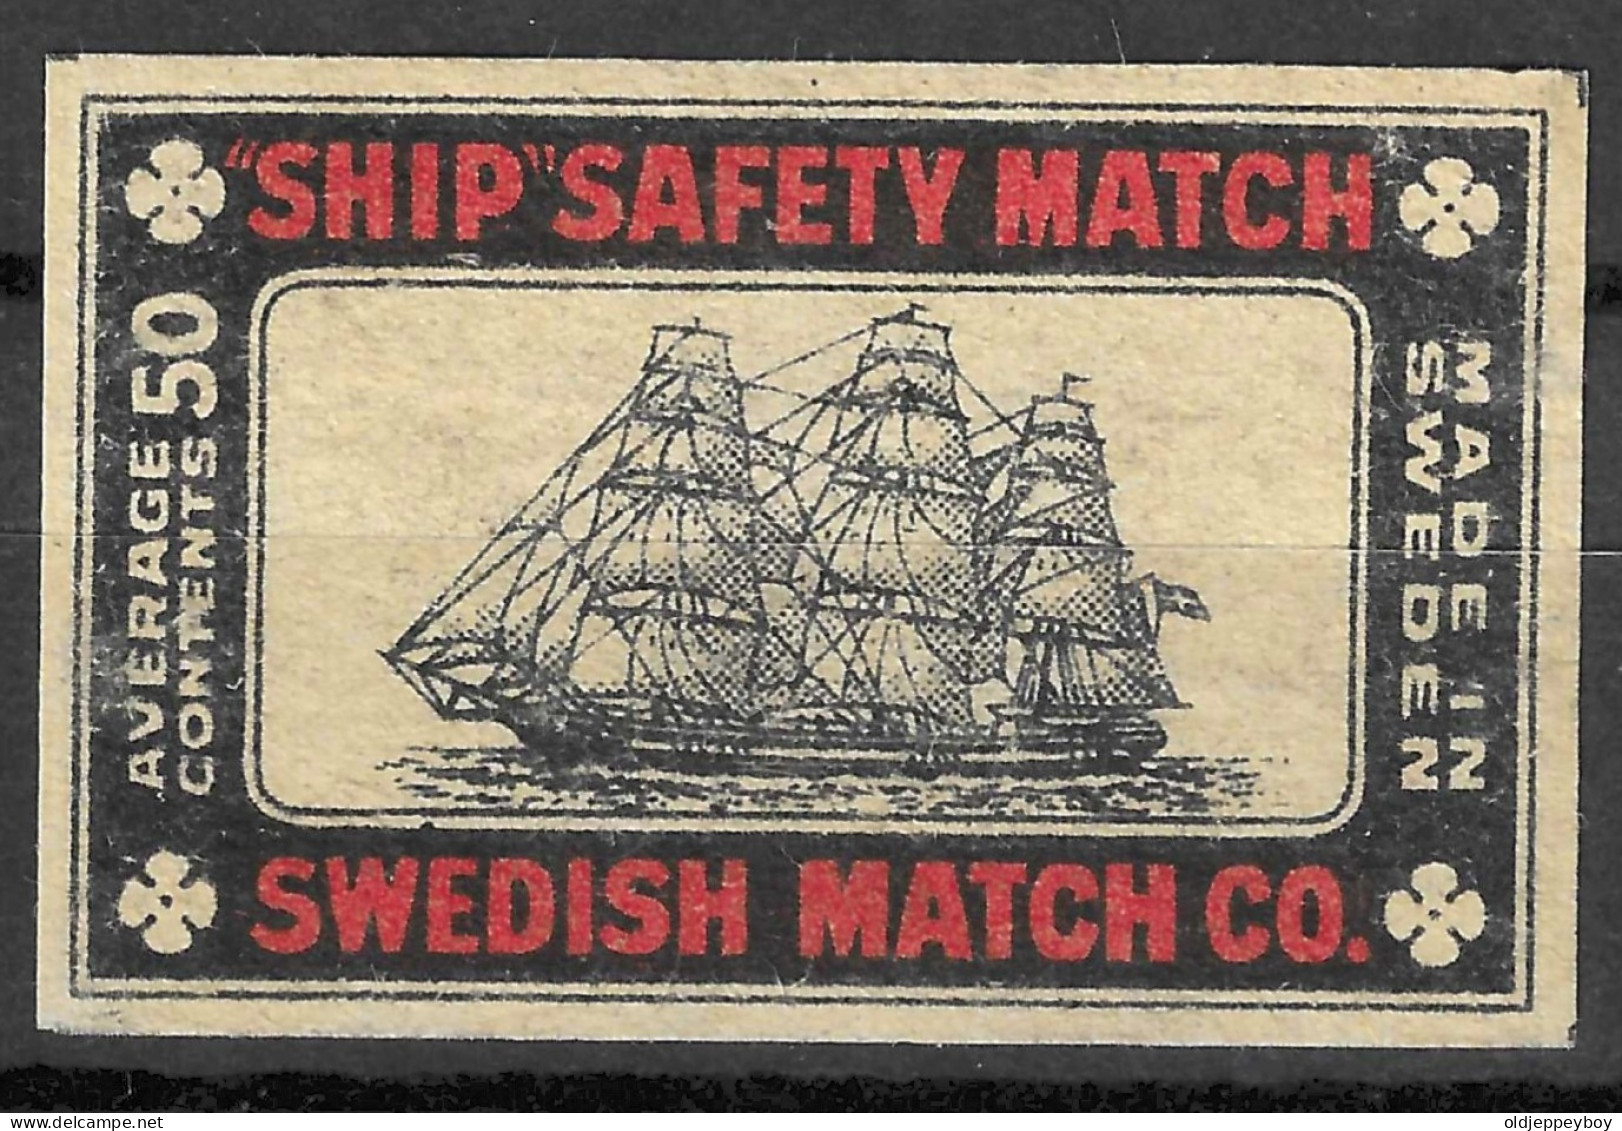 MADE IN SWEDEN VINTAGE Phillumeny MATCHBOX LABEL "SHIP" SWEDISH MATCH CO.   5.5  X 3.5 CM  RARE - Scatole Di Fiammiferi - Etichette